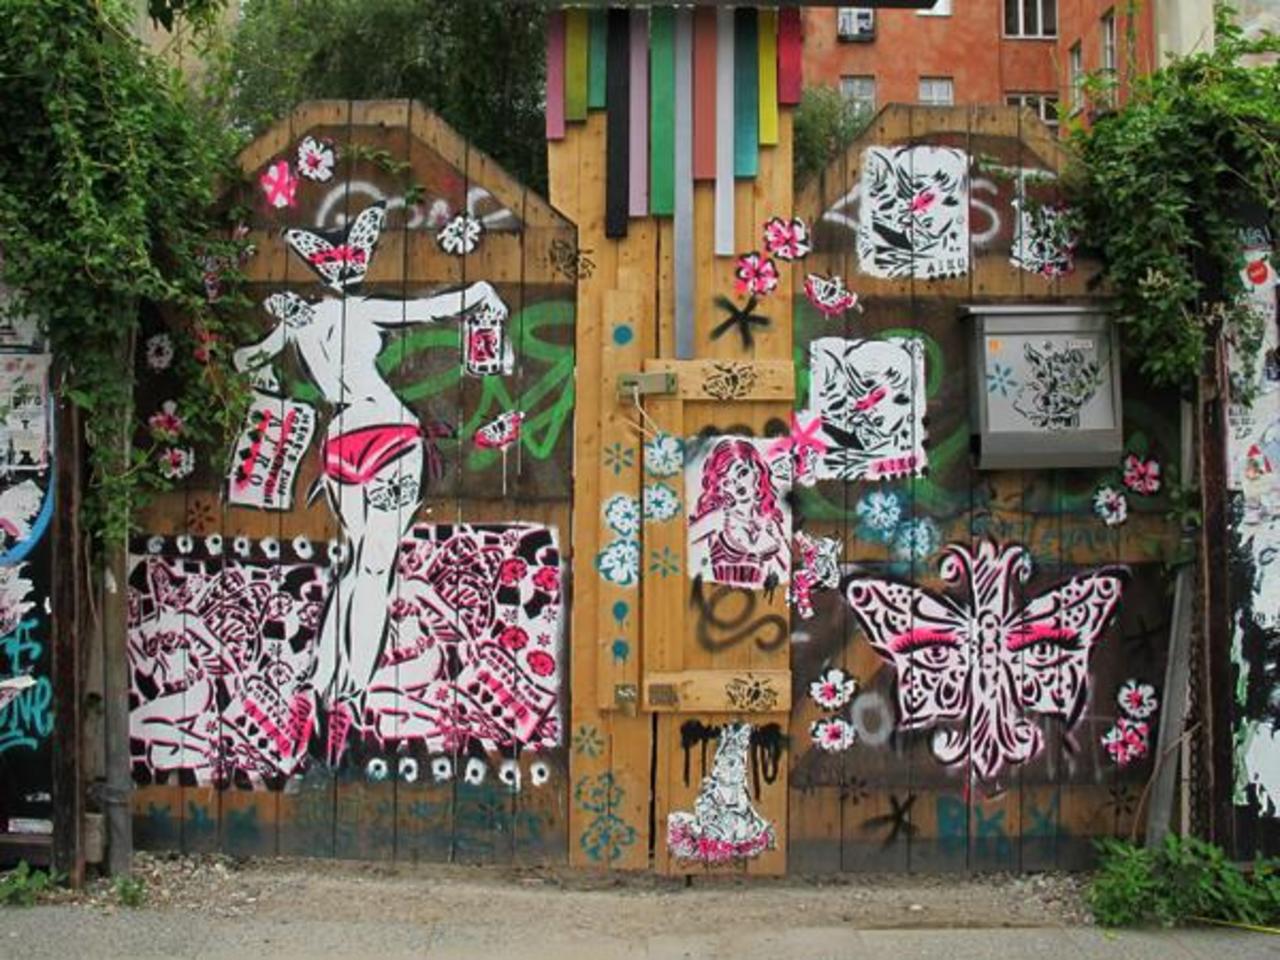 “@5putnik1: Homescaping #streetart #graffiti #art #funky #dope . : http://t.co/iyFaFNRKtO